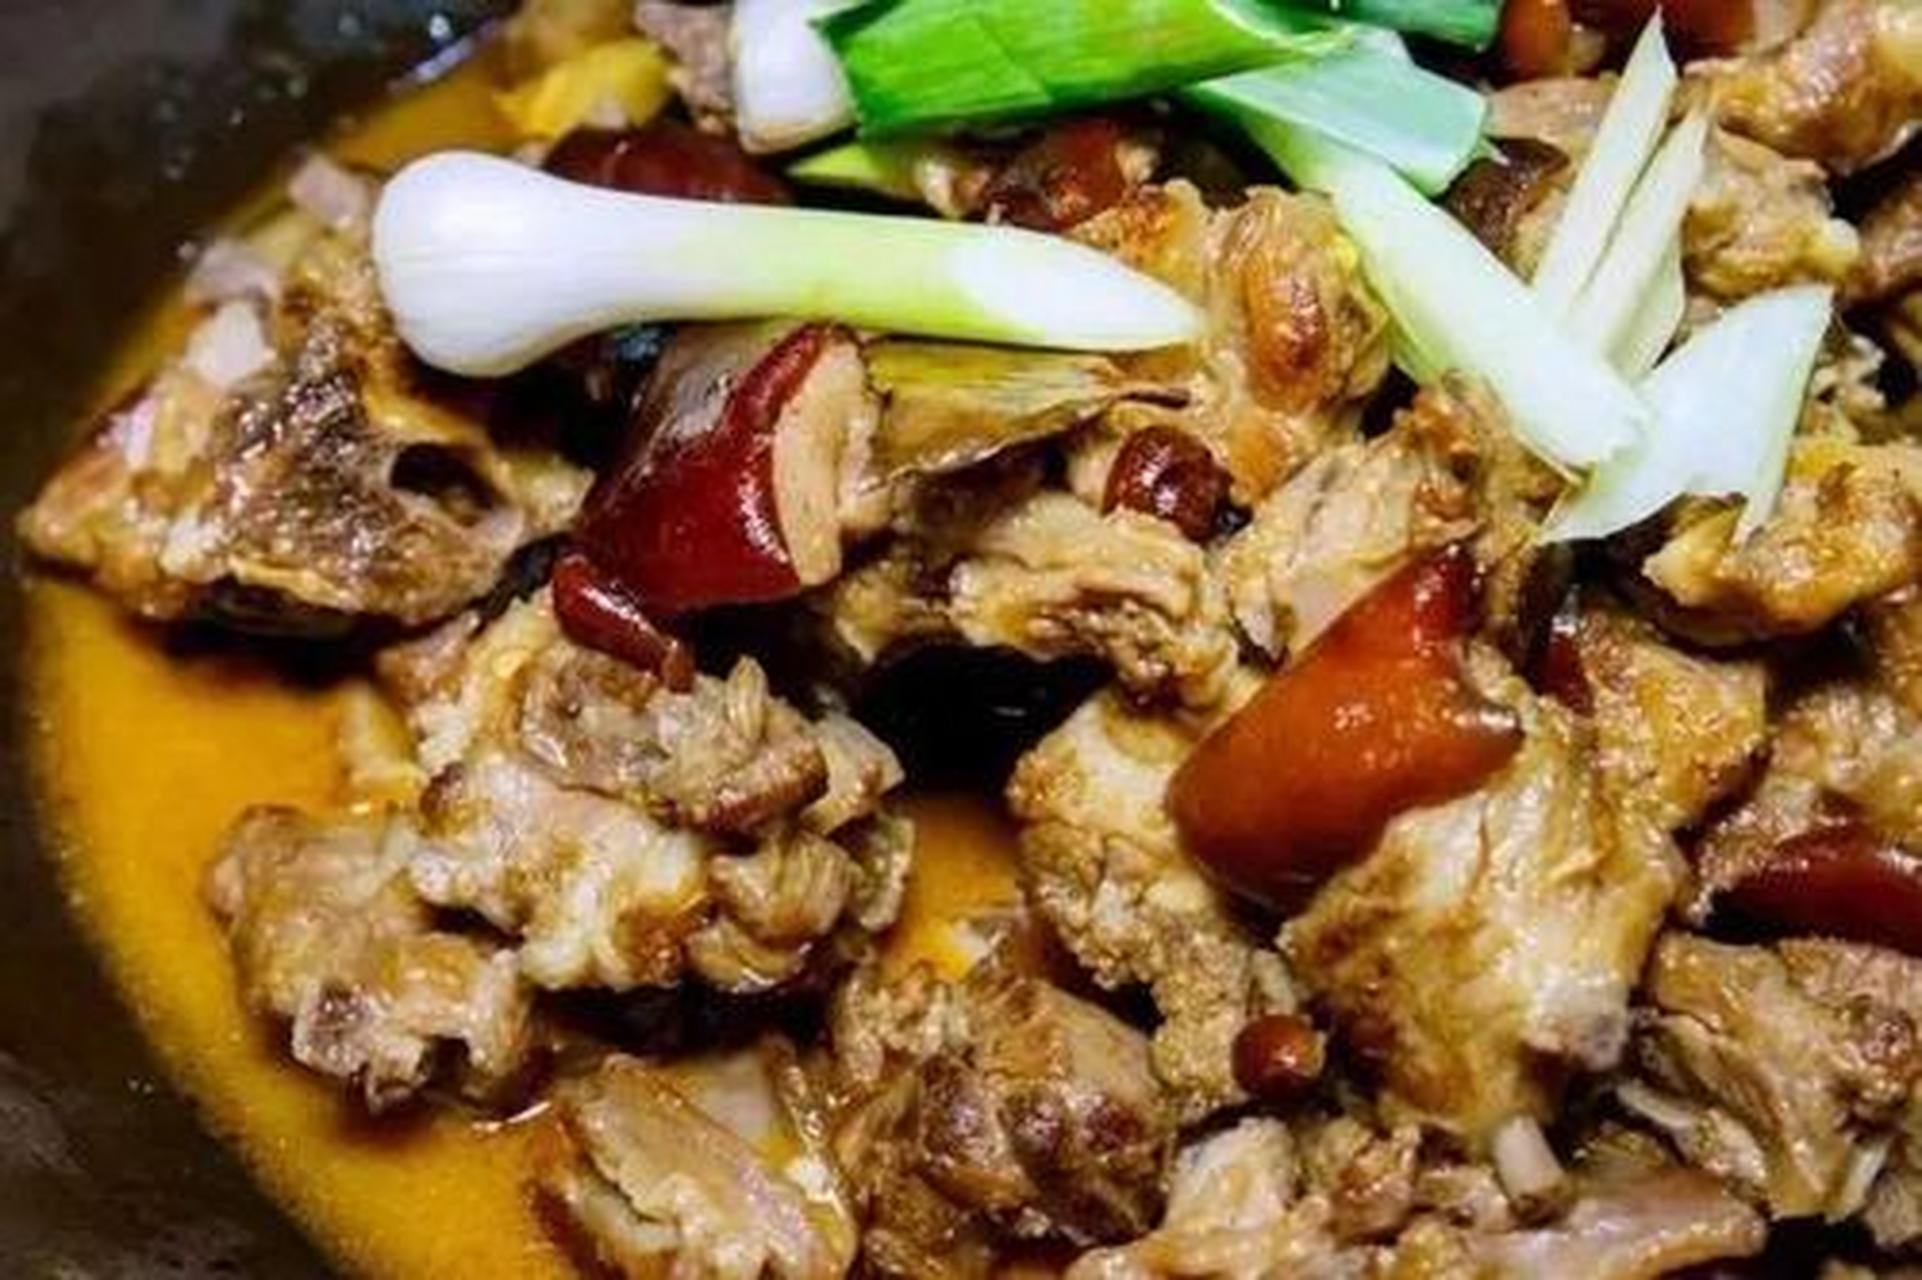 砂锅焖狗肉,是东北许多地方的风味名菜